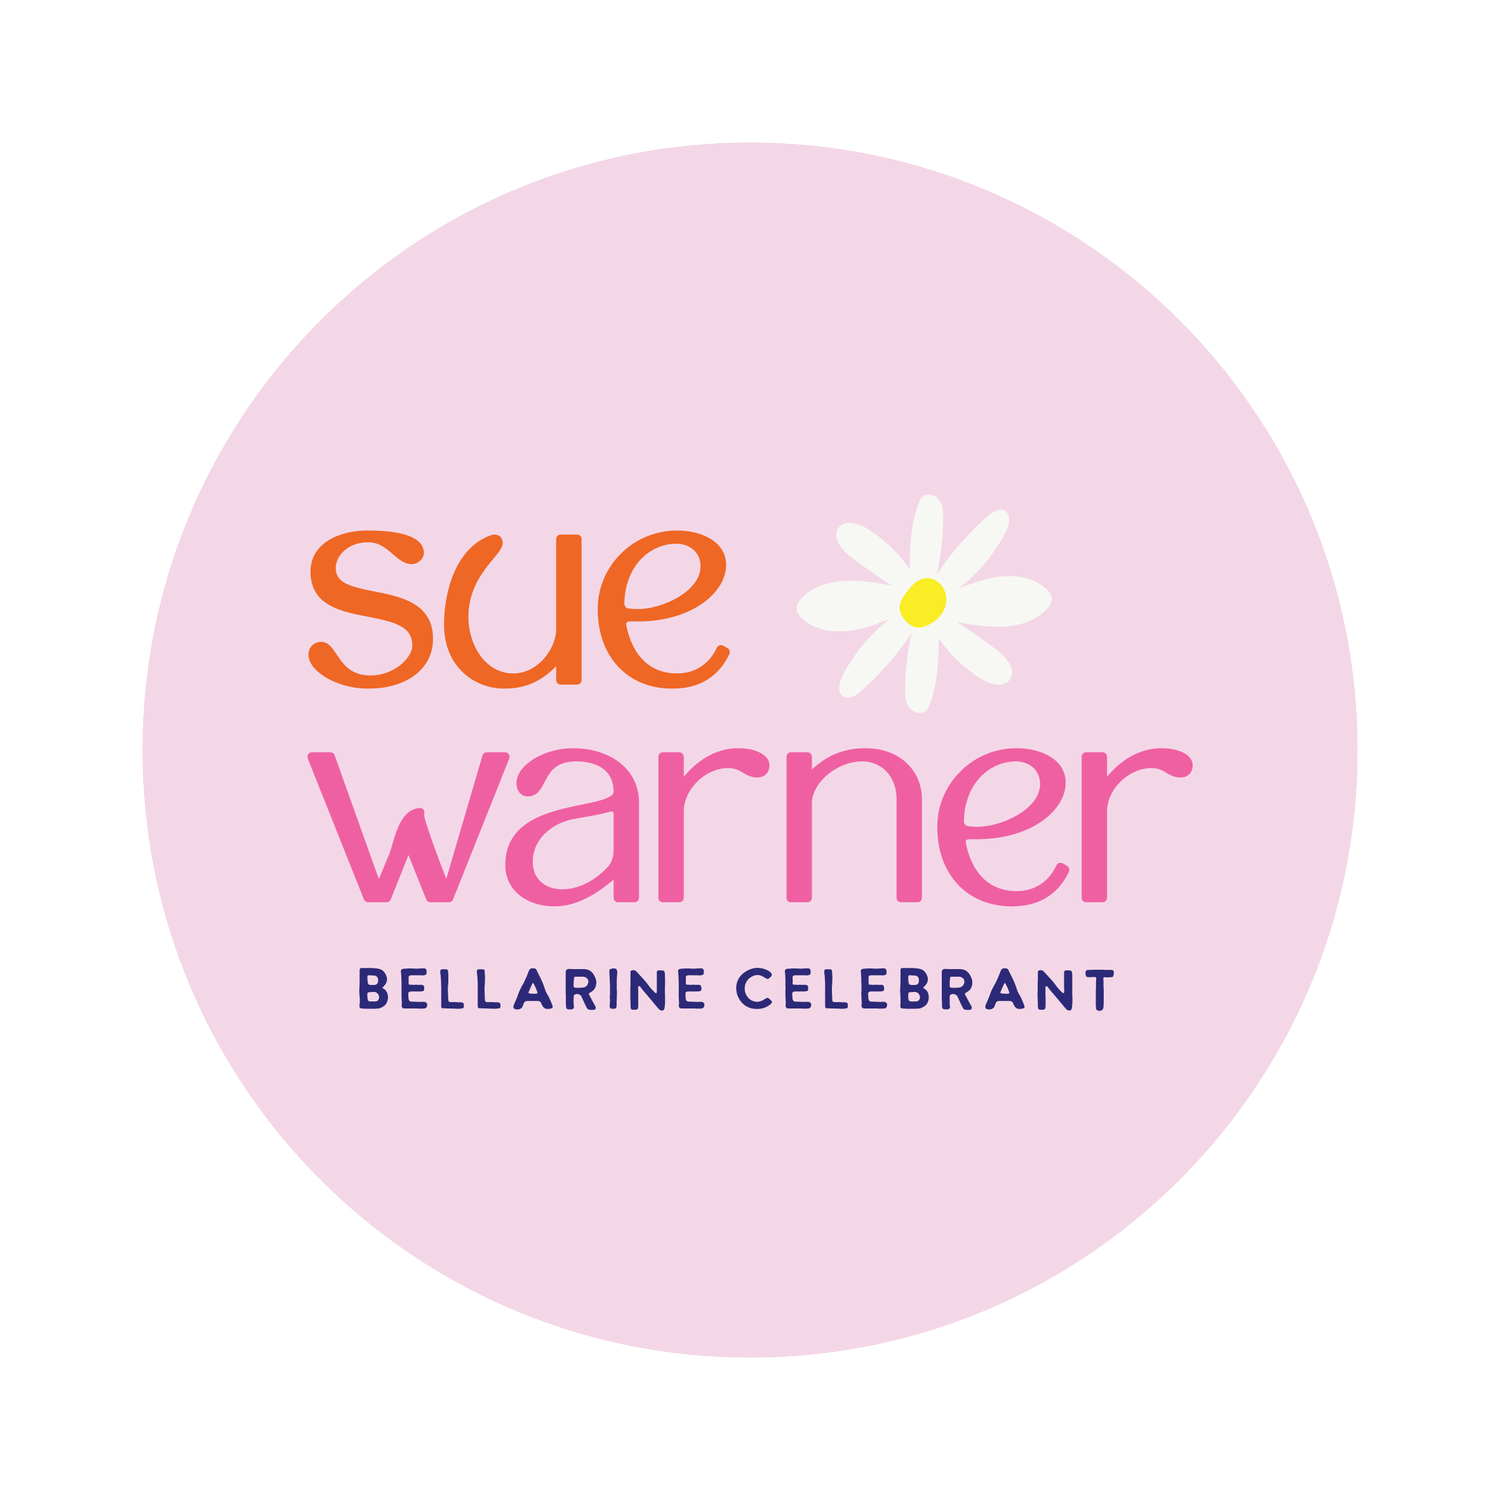 Bellarine Celebrant Sue Warner